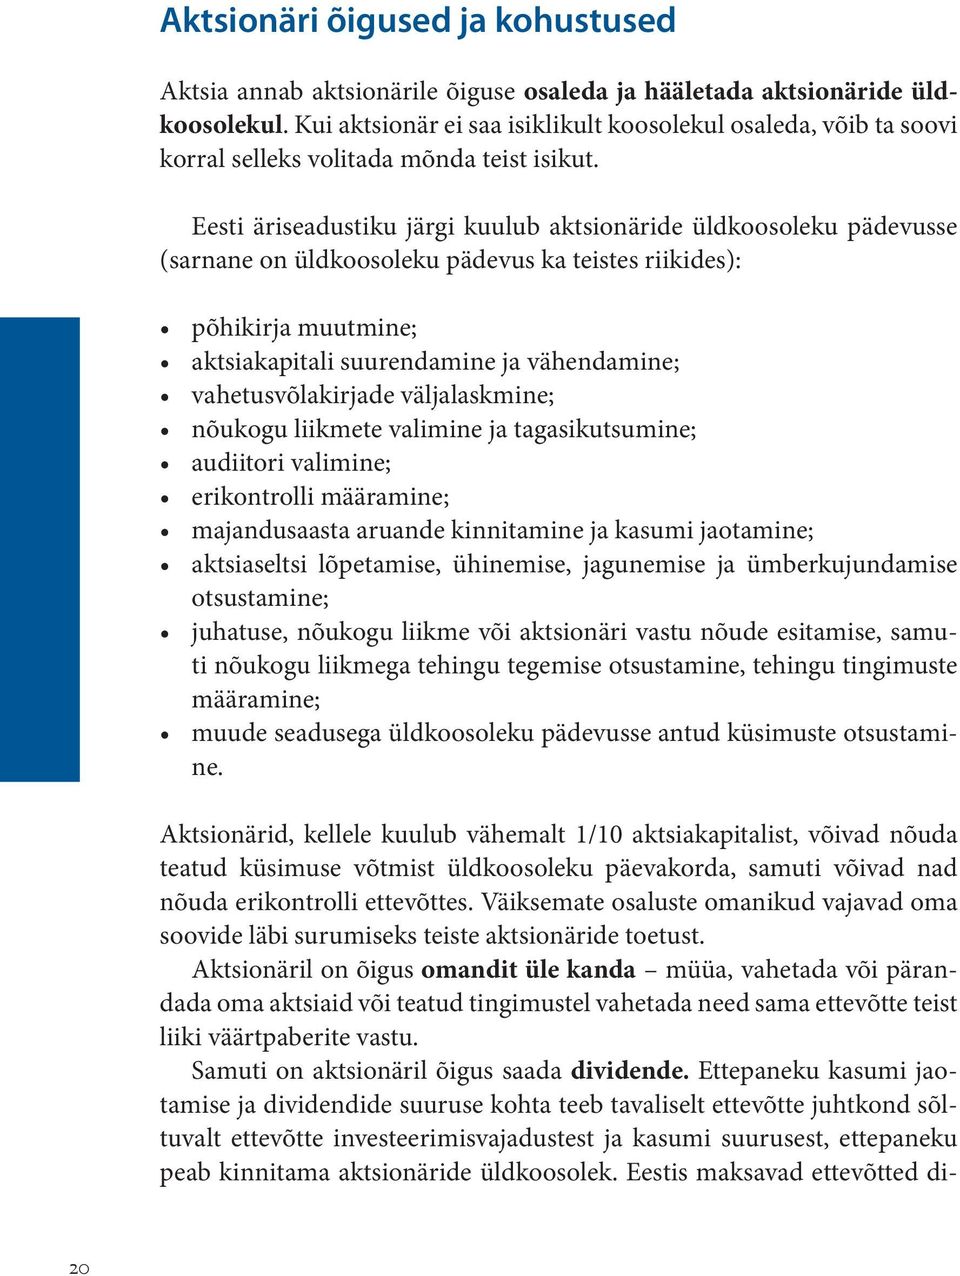 Eesti äriseadustiku järgi kuulub aktsionäride üldkoosoleku pädevusse (sarnane on üldkoosoleku pädevus ka teistes riikides): põhikirja muutmine; aktsiakapitali suurendamine ja vähendamine;